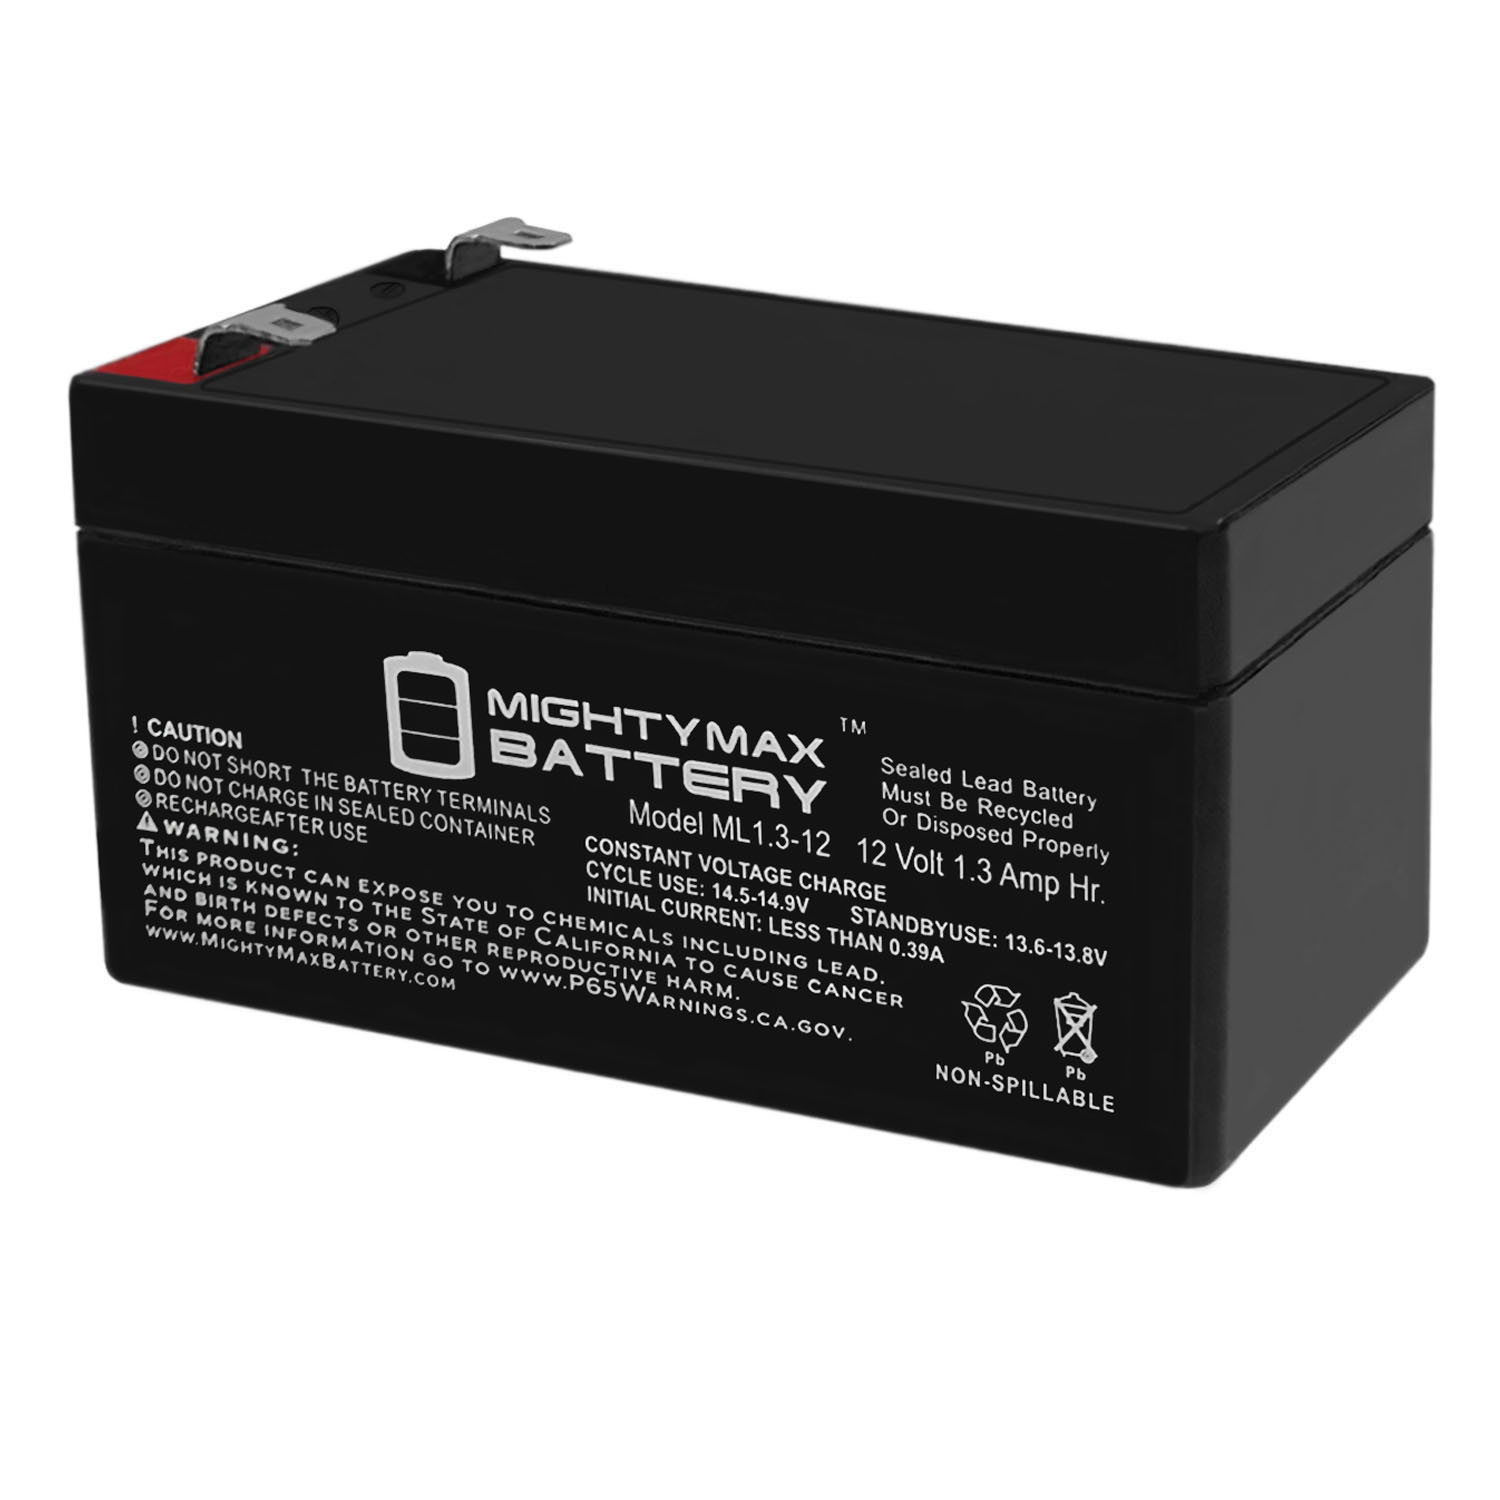 12v 1.3 ah. Ritar rt1213. ARMSTAR Max 12v. Mightiness Battery Pack 4.8v.